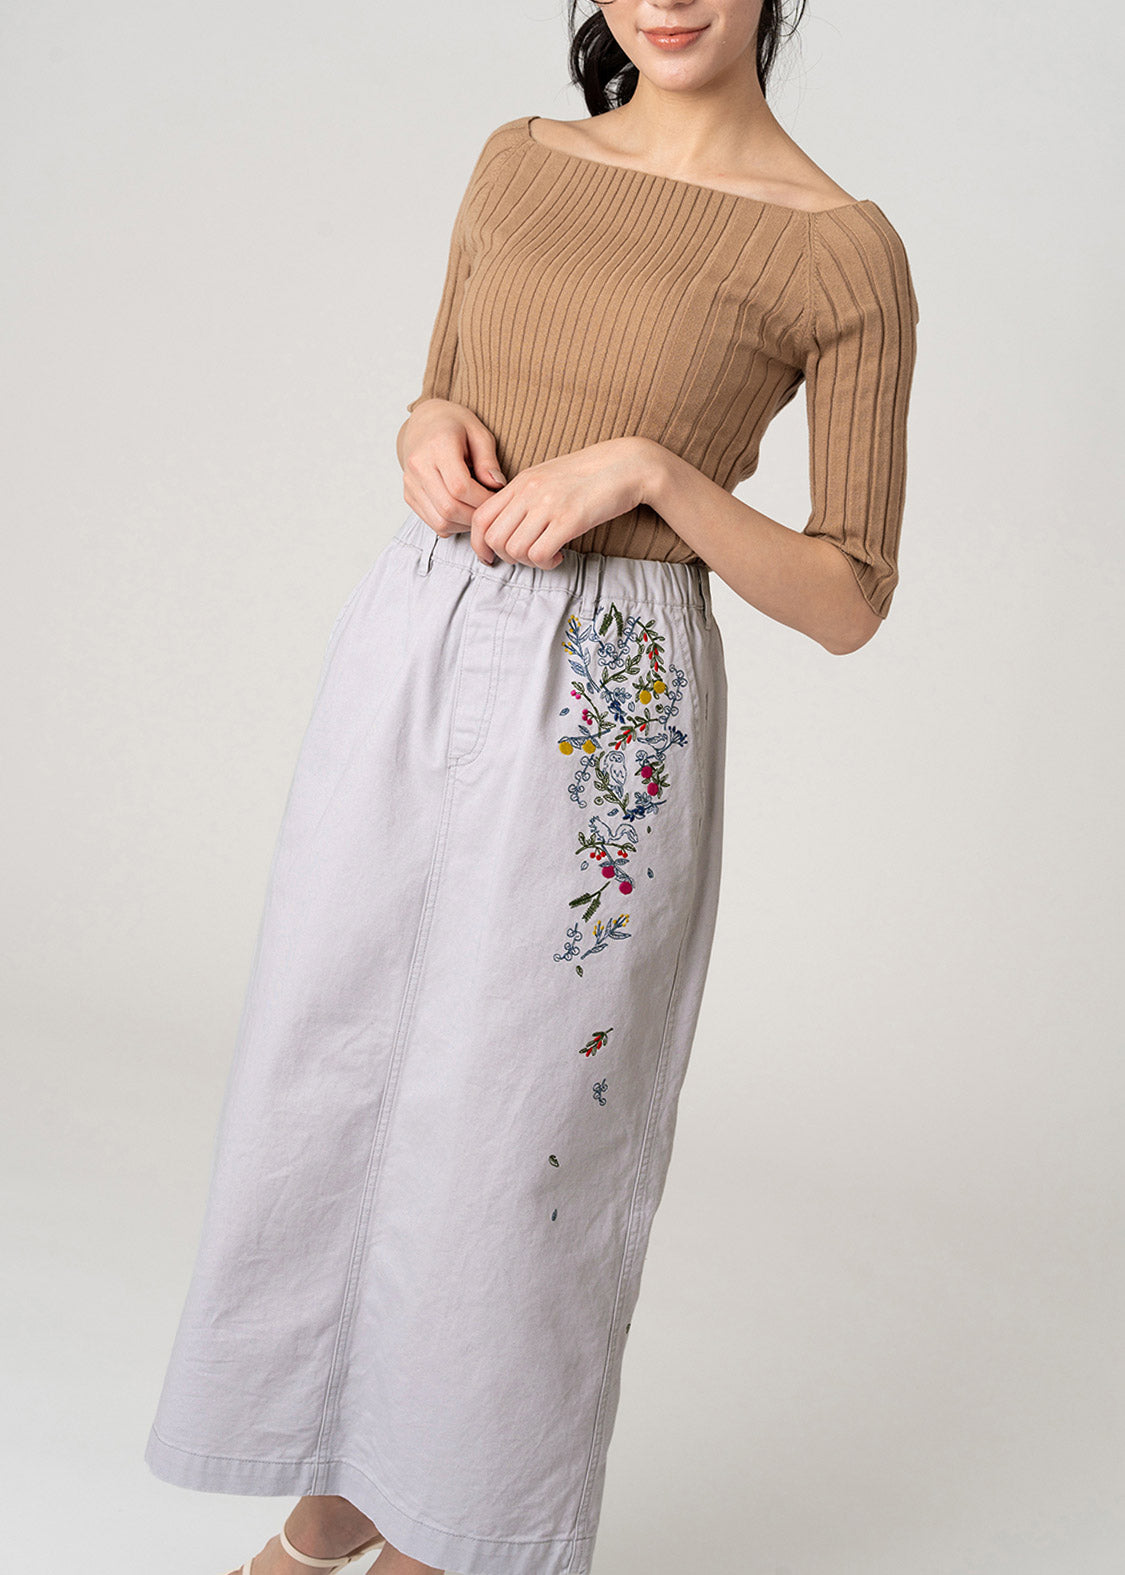 Semi-tight skirt (Warm Forest)